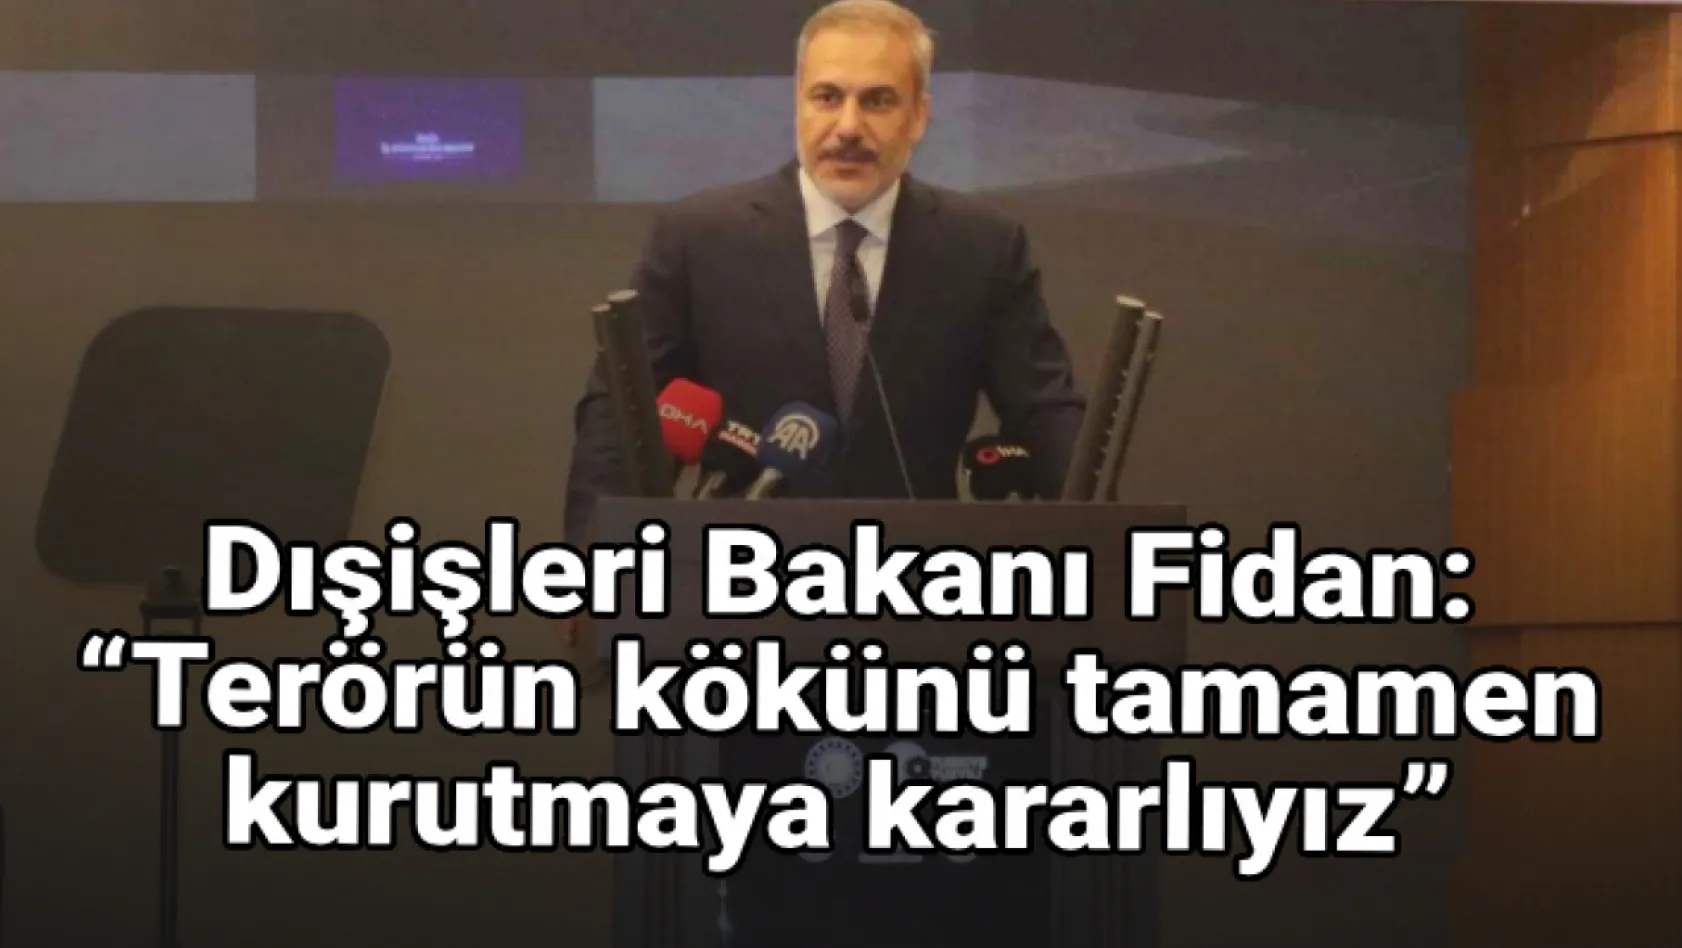 Dışişleri Bakanı Fidan: 'Terörün kökünü tamamen kurutmaya kararlıyız'